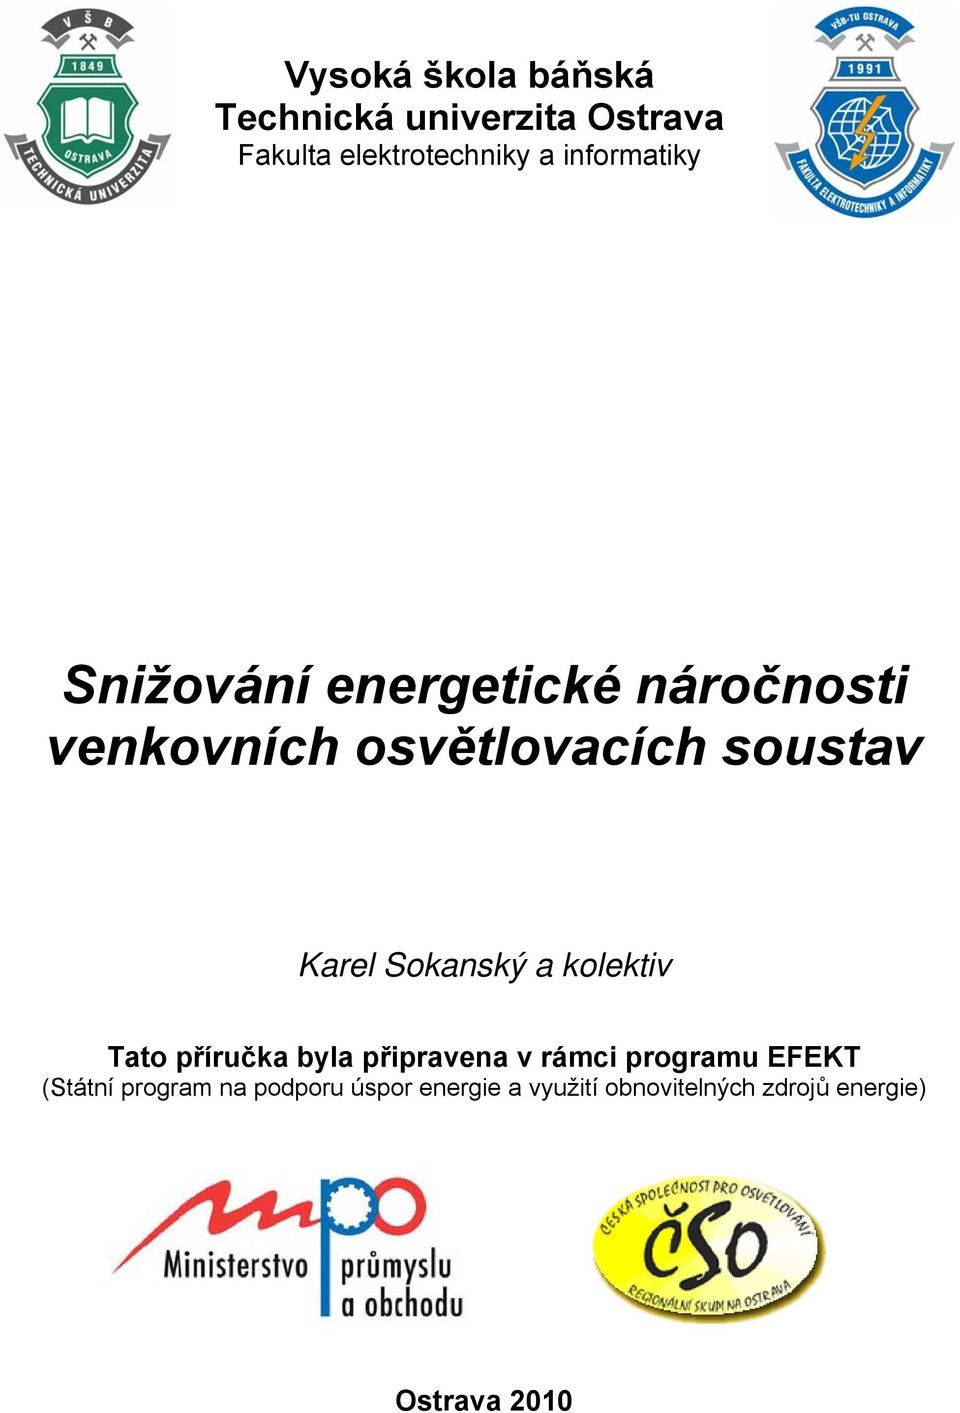 Karel Sokanský a kolektiv Tato příručka byla připravena v rámci programu EFEKT